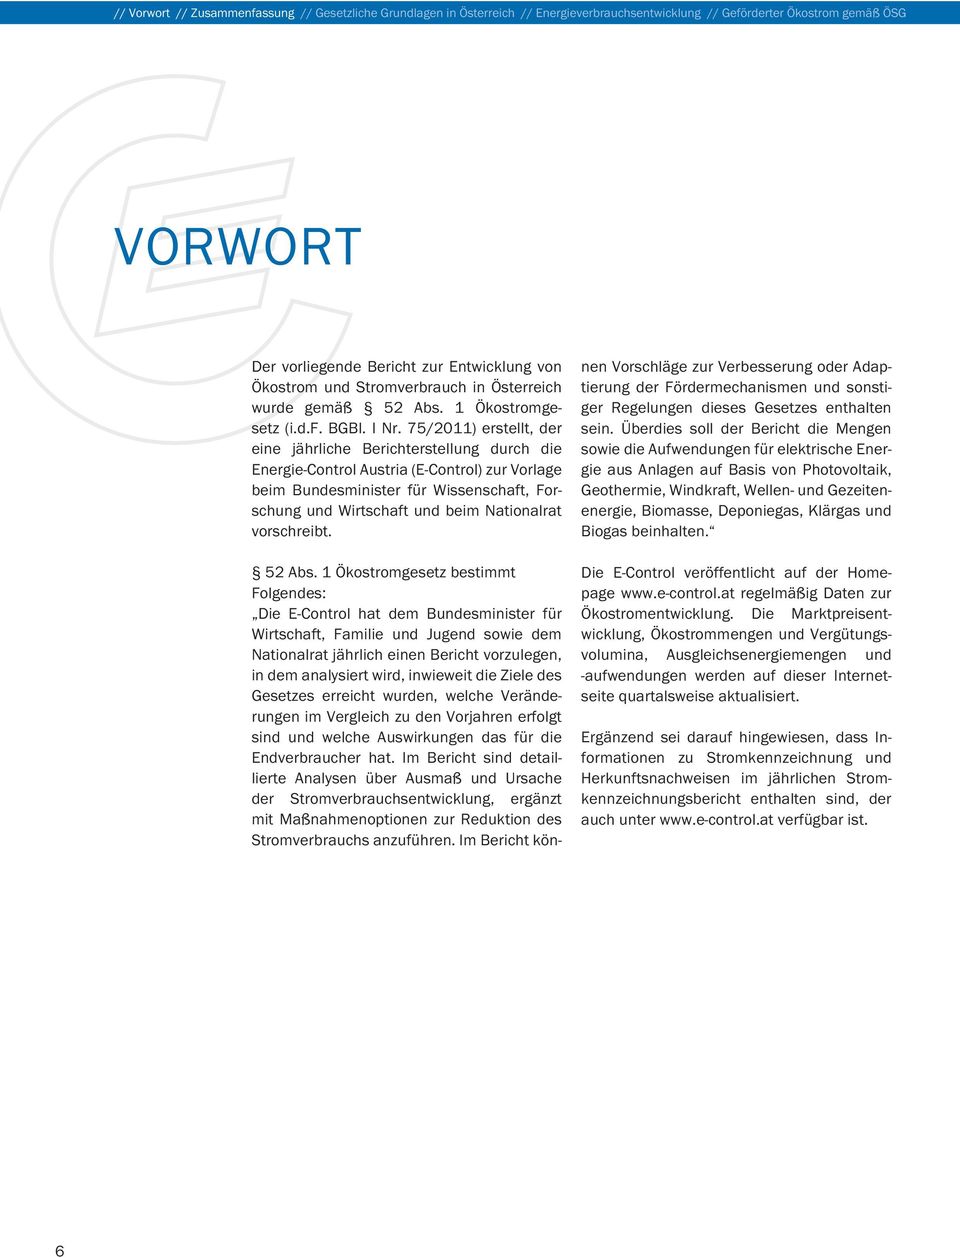 75/2011) erstellt, der eine jährliche Berichterstellung durch die Energie-Control Austria (E-Control) zur Vorlage beim Bundesminister für Wissenschaft, Forschung und Wirtschaft und beim Nationalrat